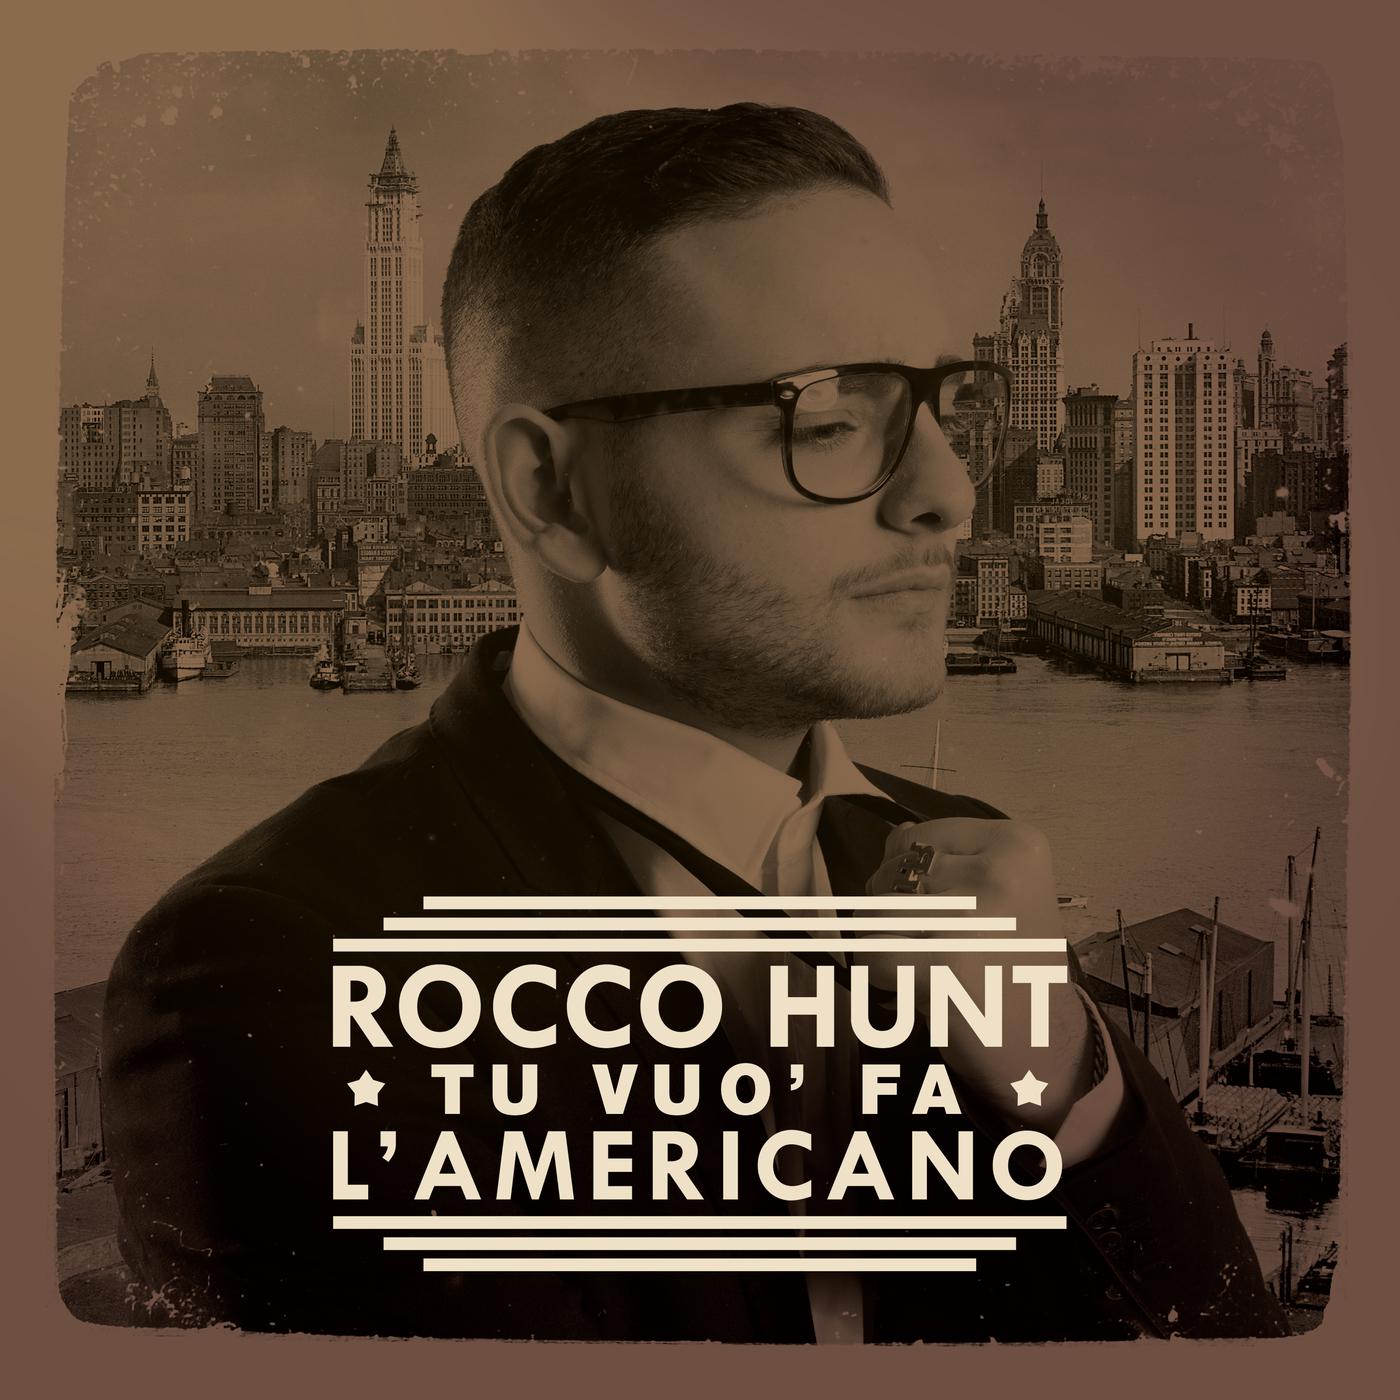 Американо слушать. Rocco Hunt. Tu Vuo fa l'americano слушать. Американо песня. Rocco Hunt Liberta album.